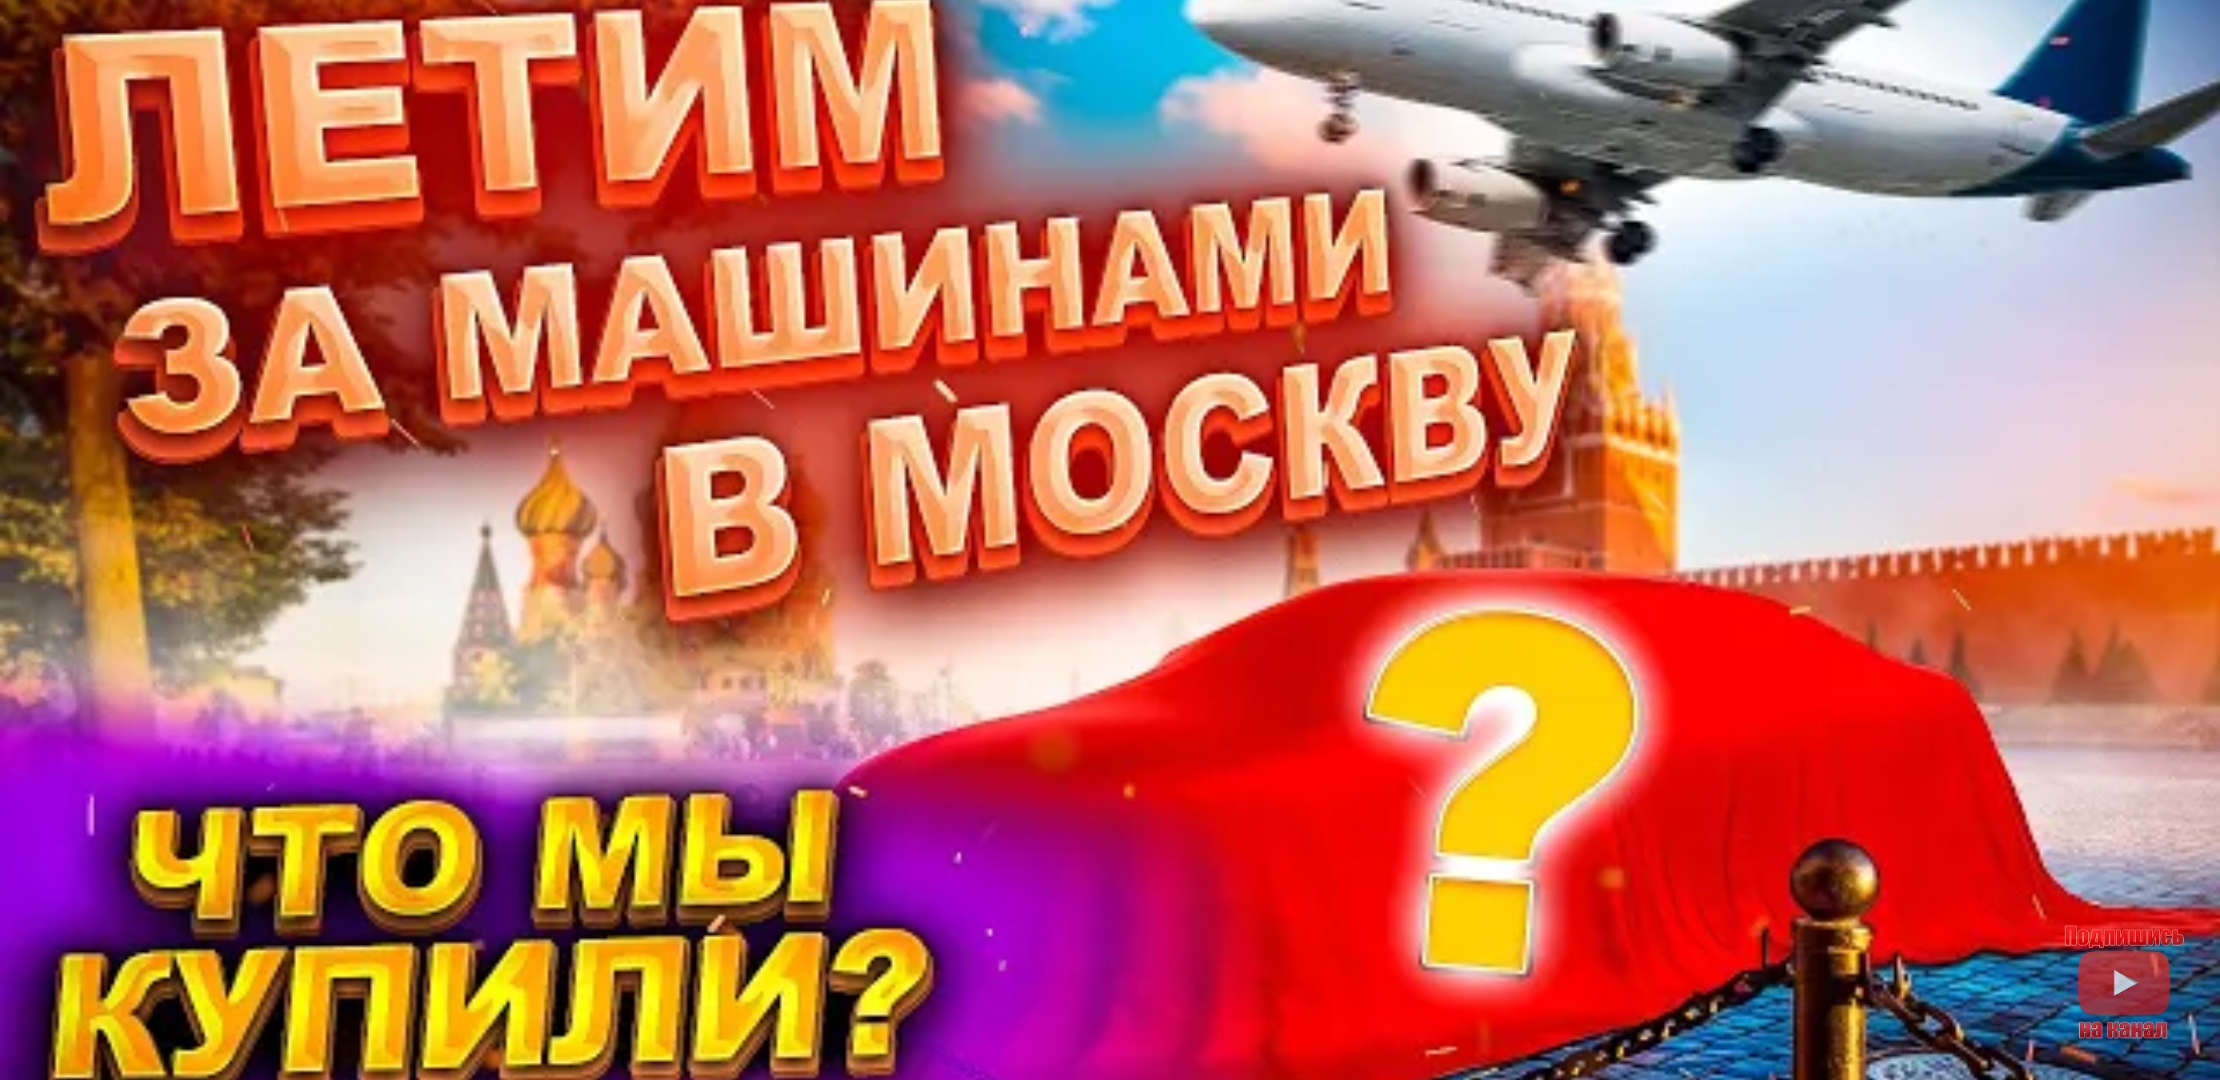 Анонс видео-теста Летим за машинами в Москву. Что мы купили?